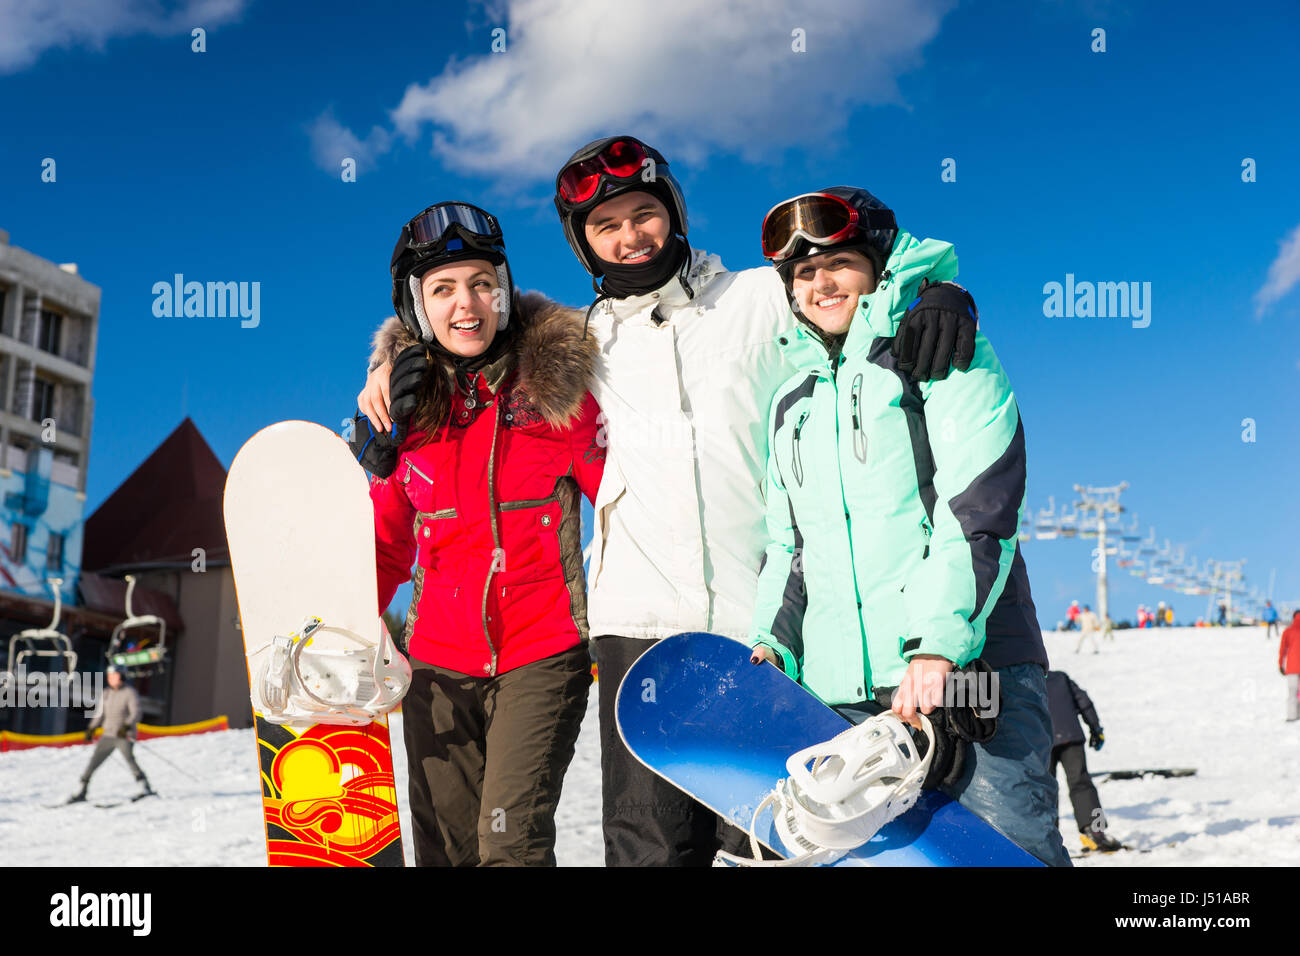 Jugend in Ski-Anzüge und Ski goggles Spaß beim stehen mit Snowboards in einem Skigebiet im Winter Stockfoto